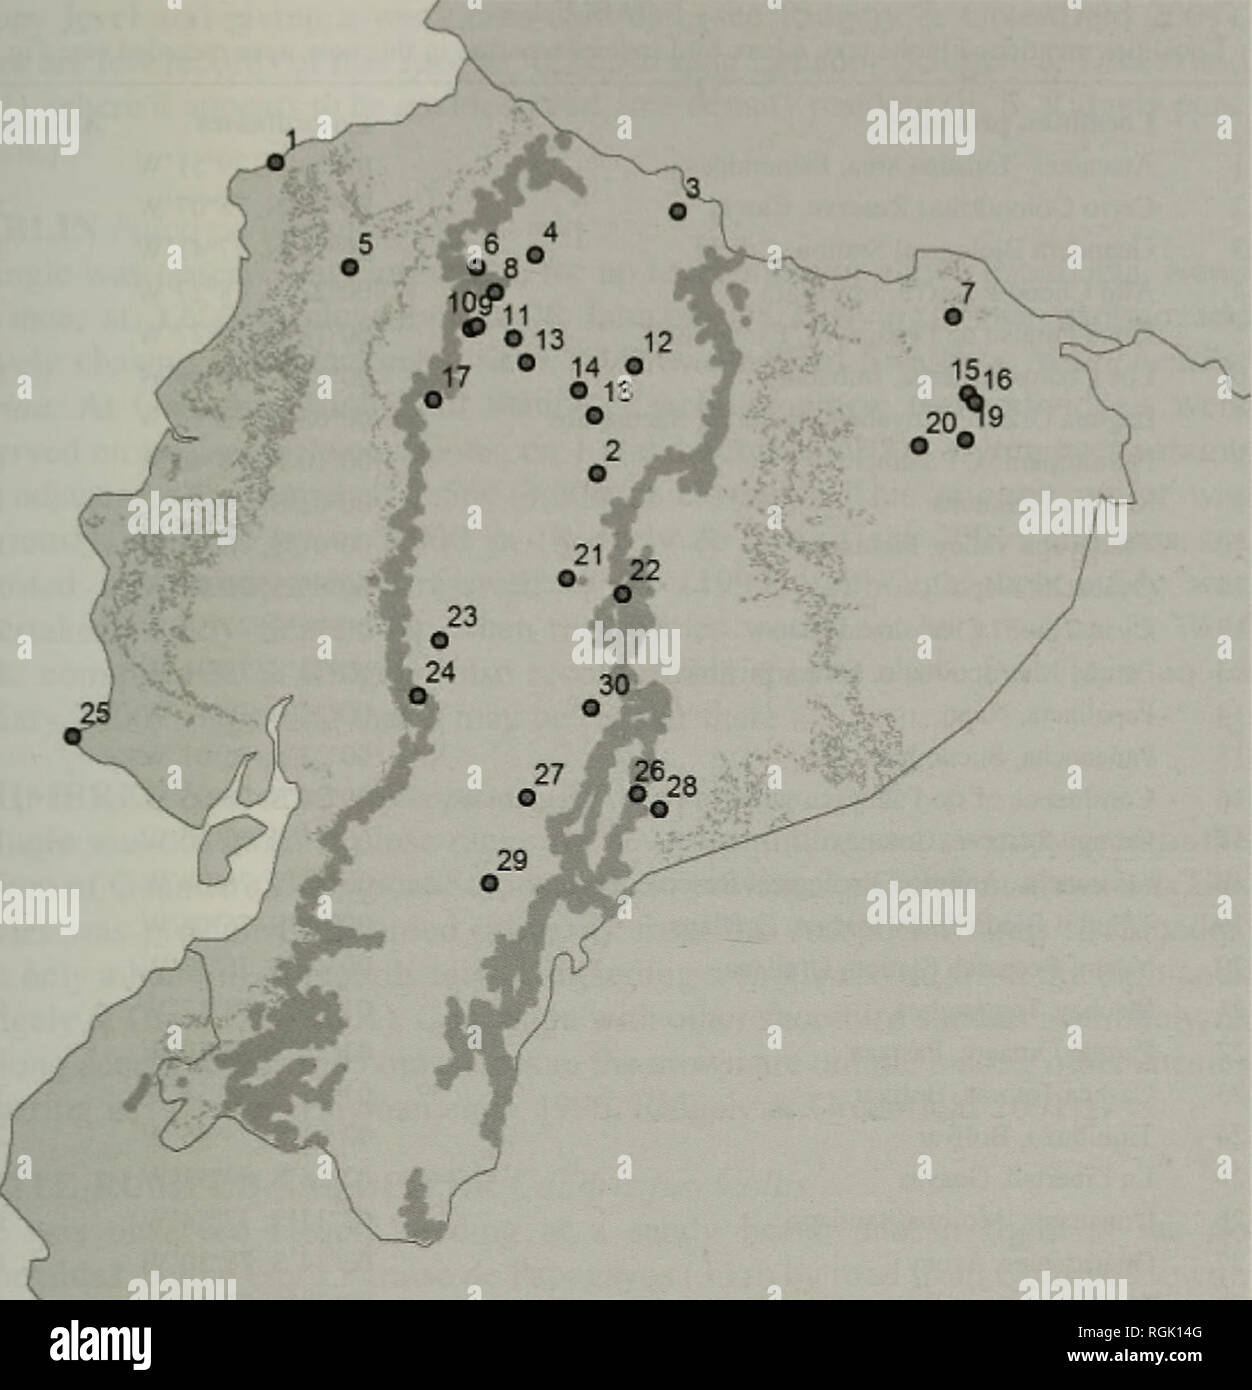 . Boletín del Club de ornitólogos británicos. Las aves. Juan F. Freile L89 Bol. B.O.C. 2004 124(3). Figura 1. Mapa de Ecuador mostrando los sitios de estudio (círculos y números). Los números corresponden a los mencionados en la Tabla 1. Líneas de contorno a 300 m (línea delgada) y 1.000 m de altitud (amplia gama). Escala 1: 4,000.000. KITE de cabeza gris Leptodon cayanensis se observó un adulto sobrevolar un área arbolada encima de Mindo, provincia de Pichincha, a 1.500 m de altitud el 28 de marzo de 1998. Anteriormente conocido en Ecuador hasta 900 m en la provincia de El Oro (Ridgely &Amp; Greenfield 2001). Kirwan &Amp; Marlow (1996) comunicaron Foto de stock